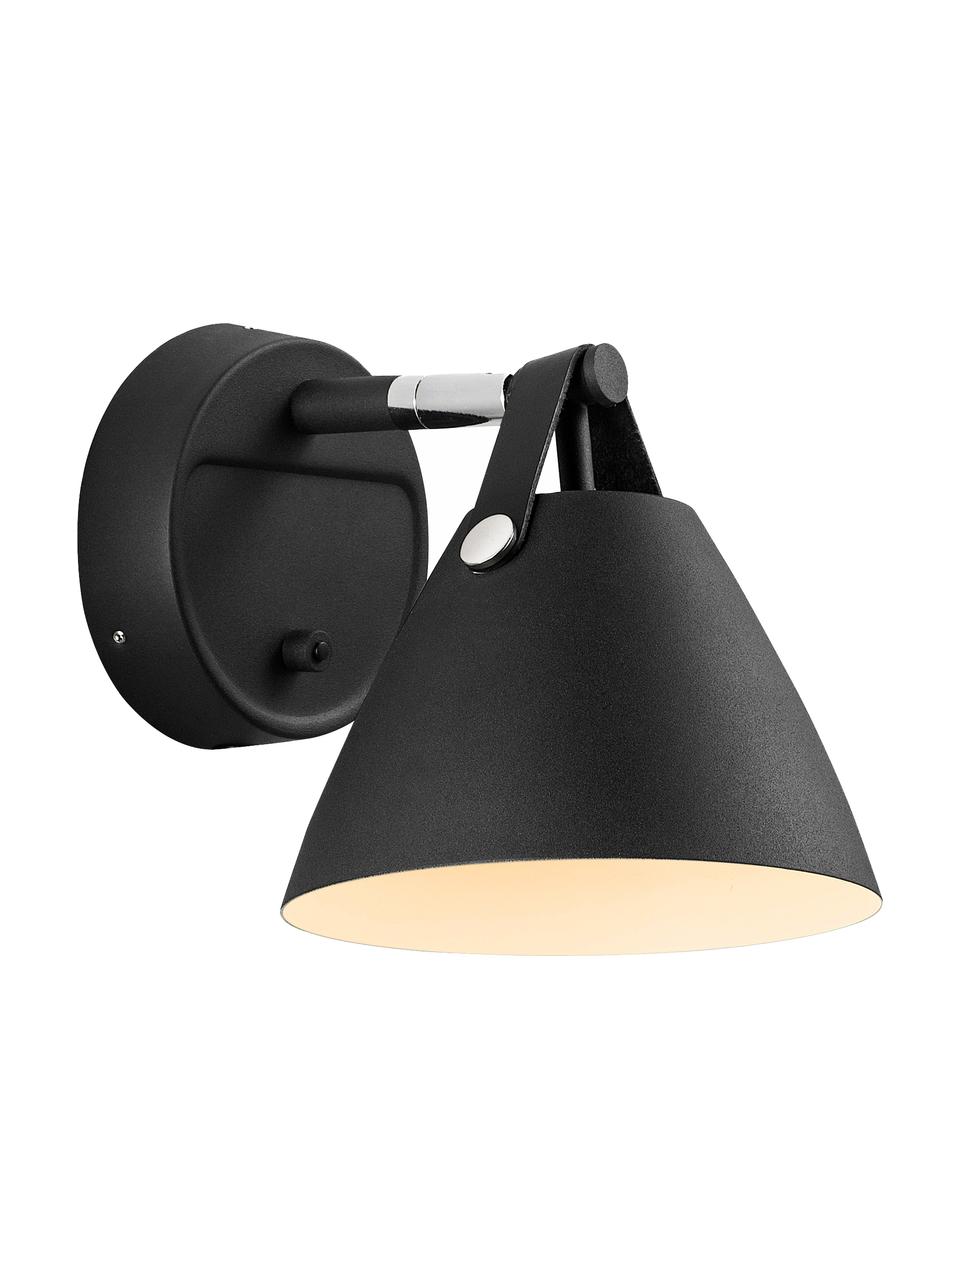 Wandlamp Barnaby met stekker, Lampenkap buitenzijde en wandbevestiging: zwart. Lampenkap binnenzijde: wit, 17 x 17 cm